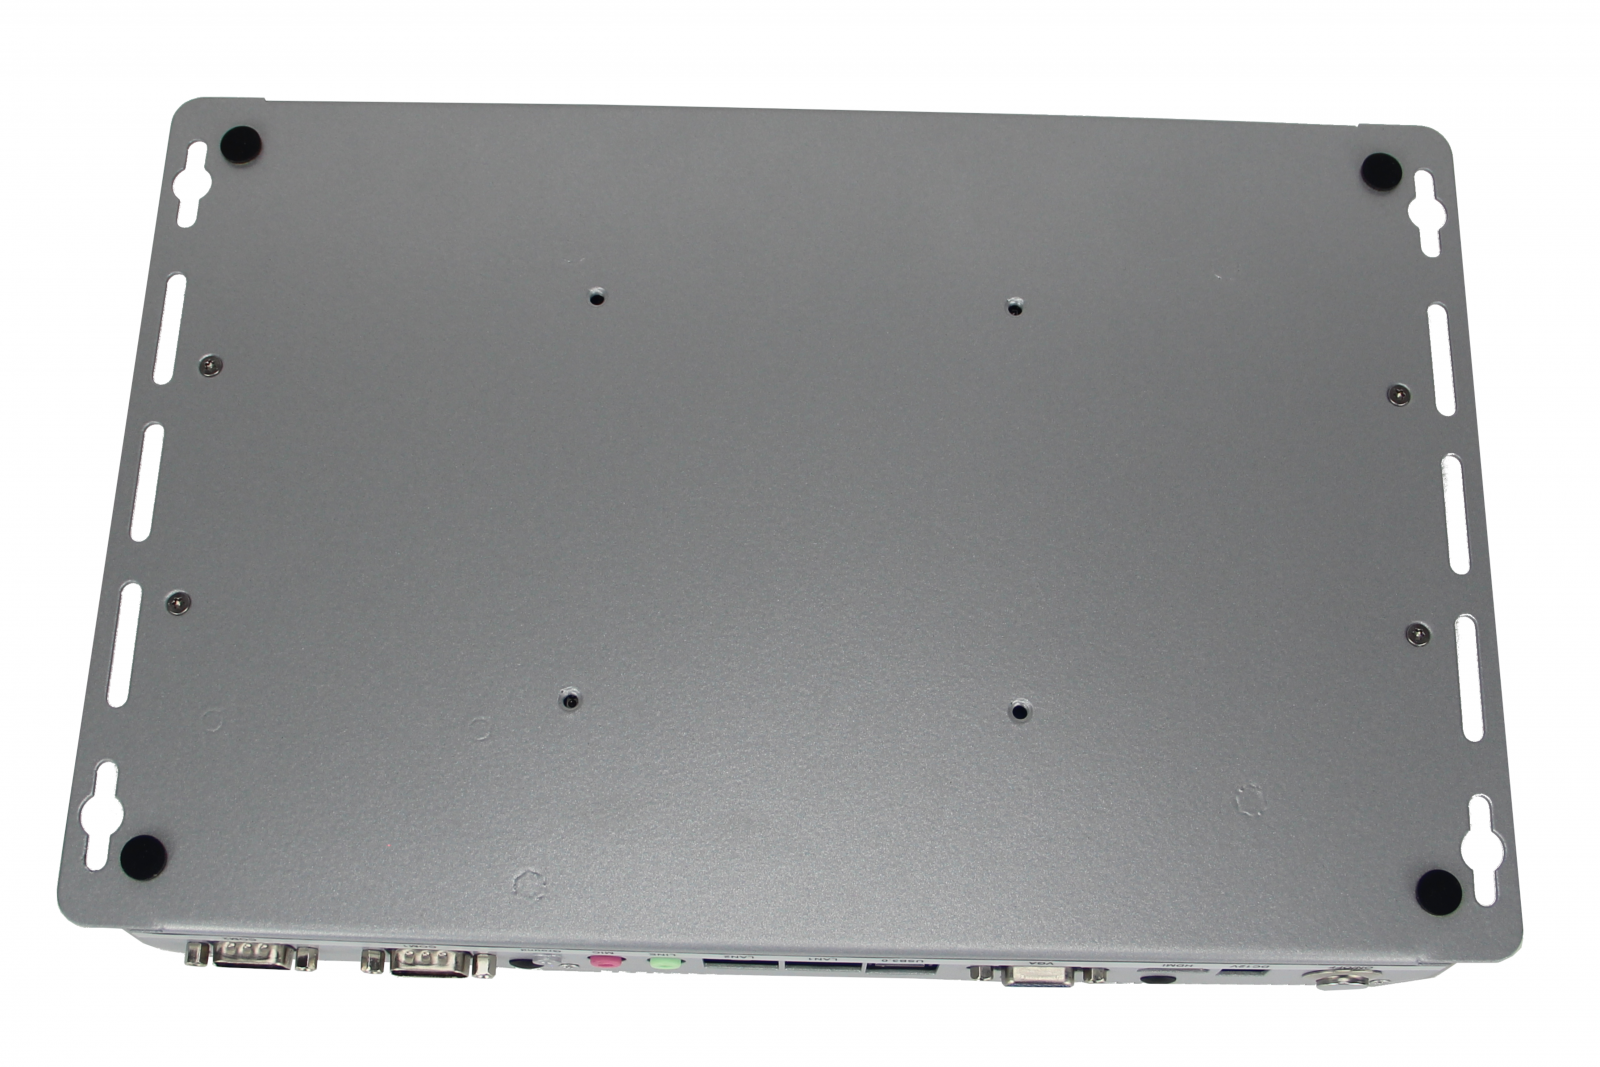 Minimaker BBPC-K04 (i5-7200U) - odporny mini pc do zastosowa w halach produkcyjnych i magazynach (Intel Core i5), 2x LAN RJ45 oraz 6x COM RS232